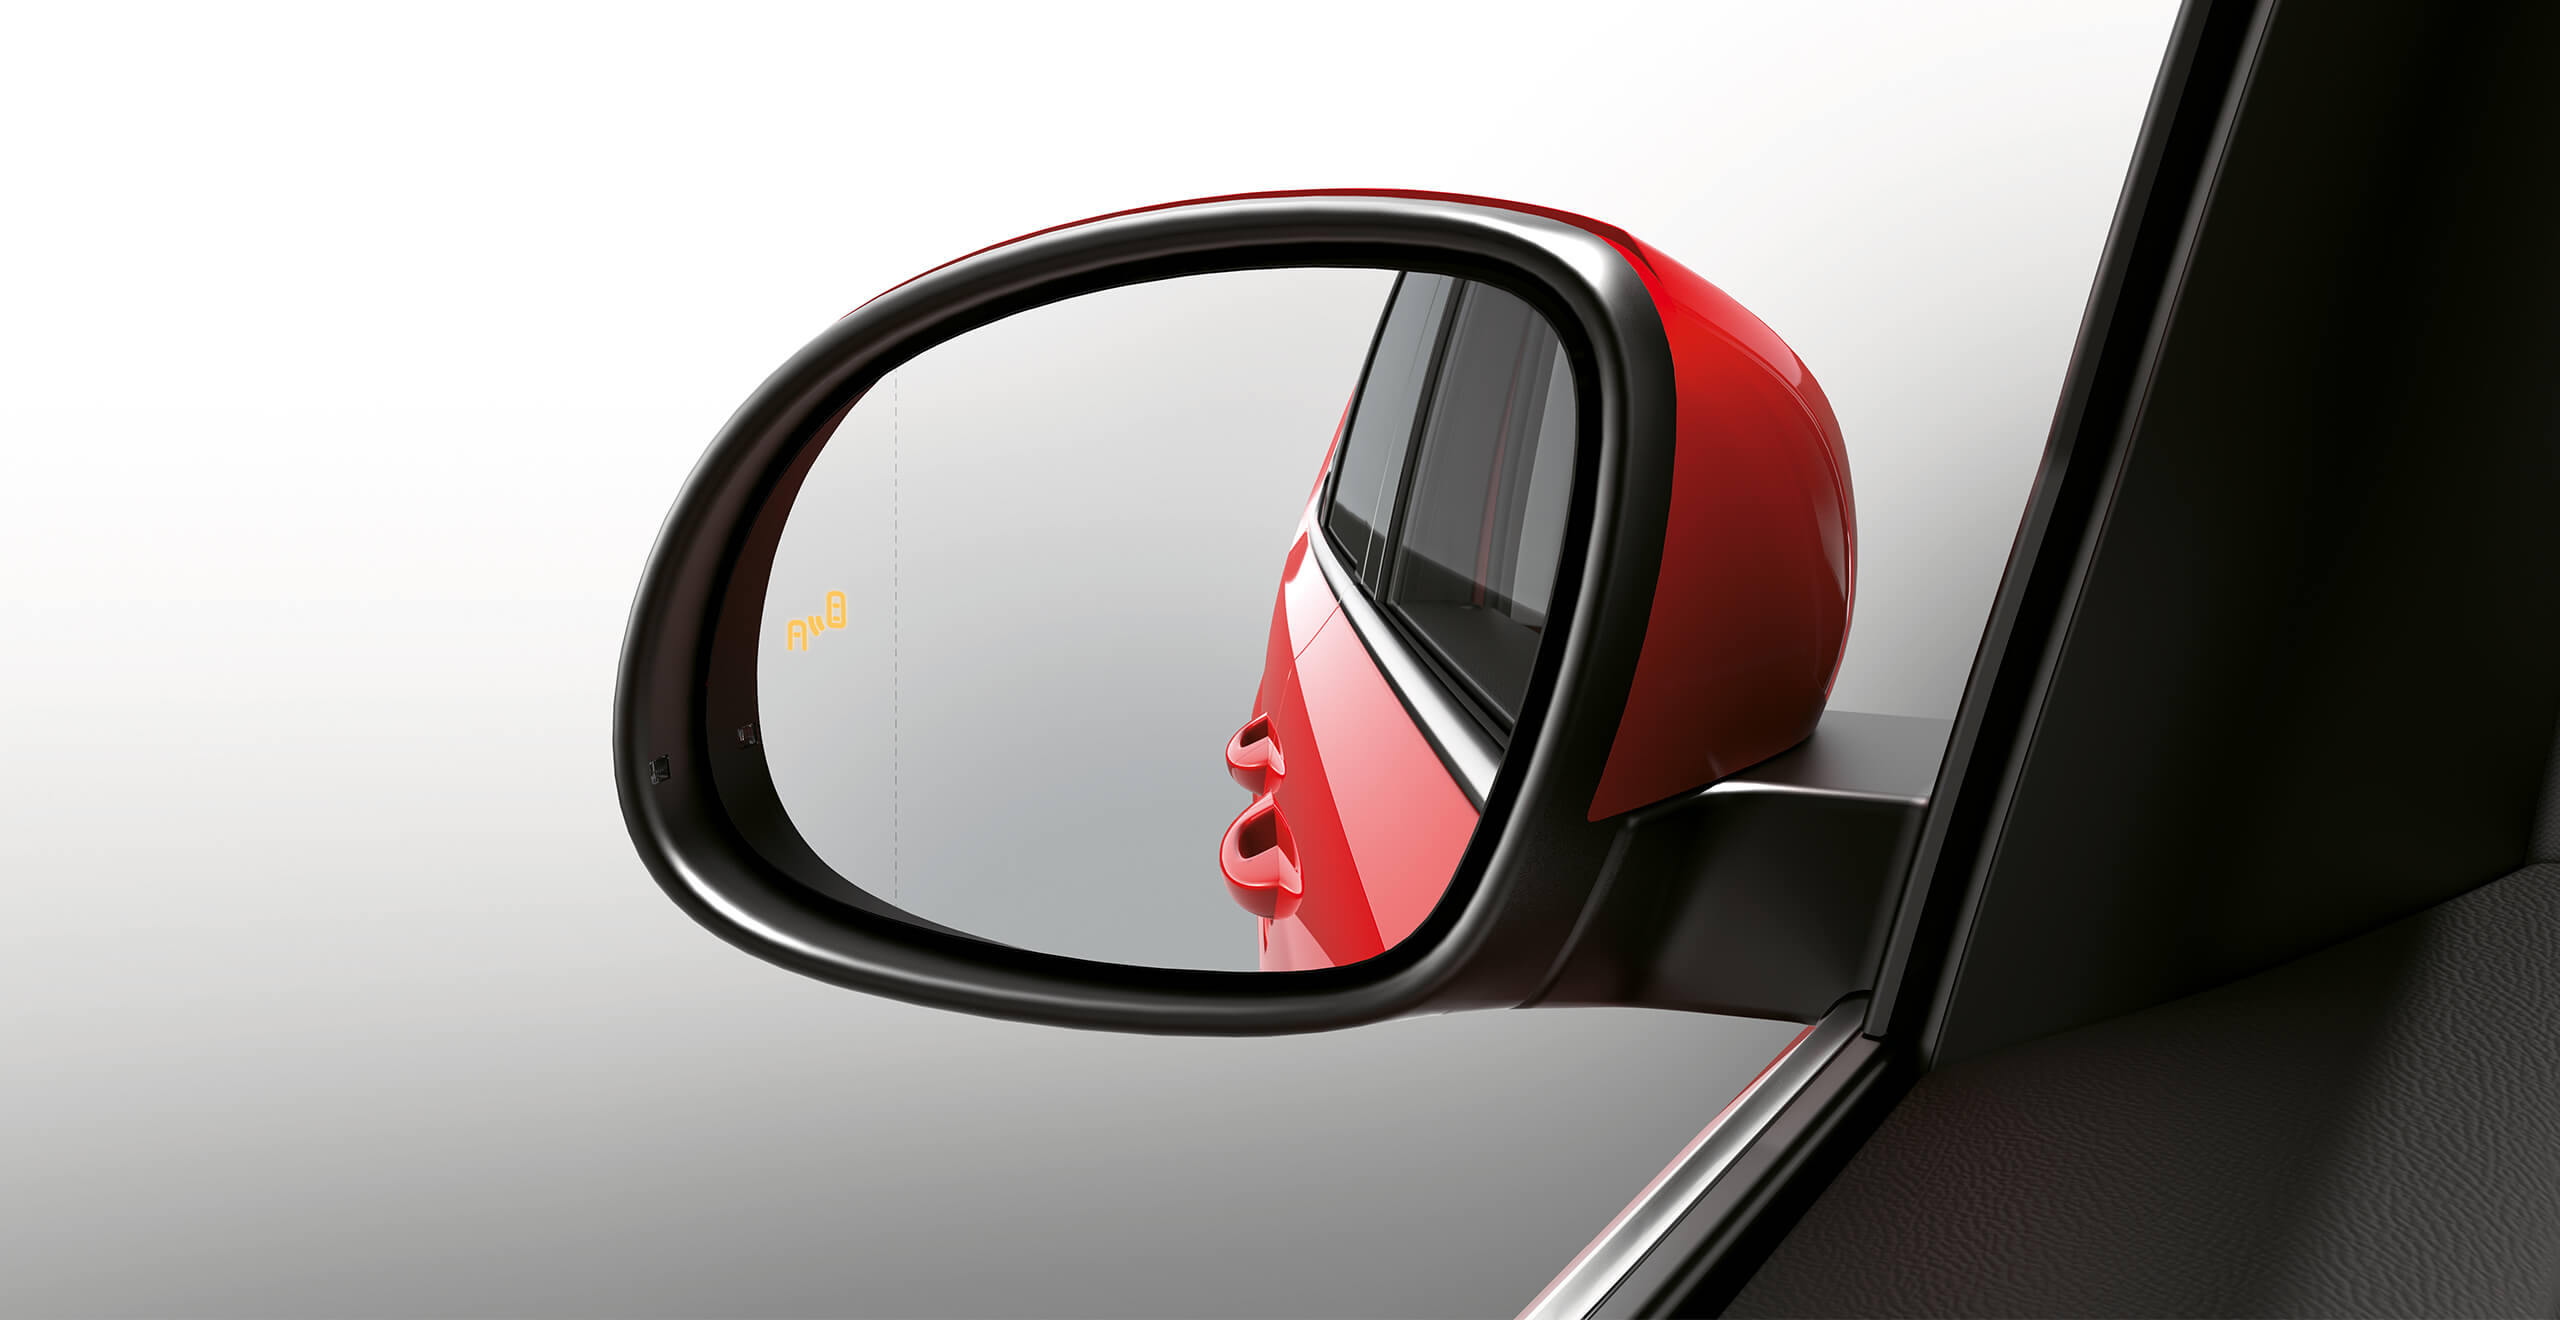 SEAT Alhambra ģiemenes automašīnaDrošības iezīmes: SEAT Alhambra aklās zonas sensors